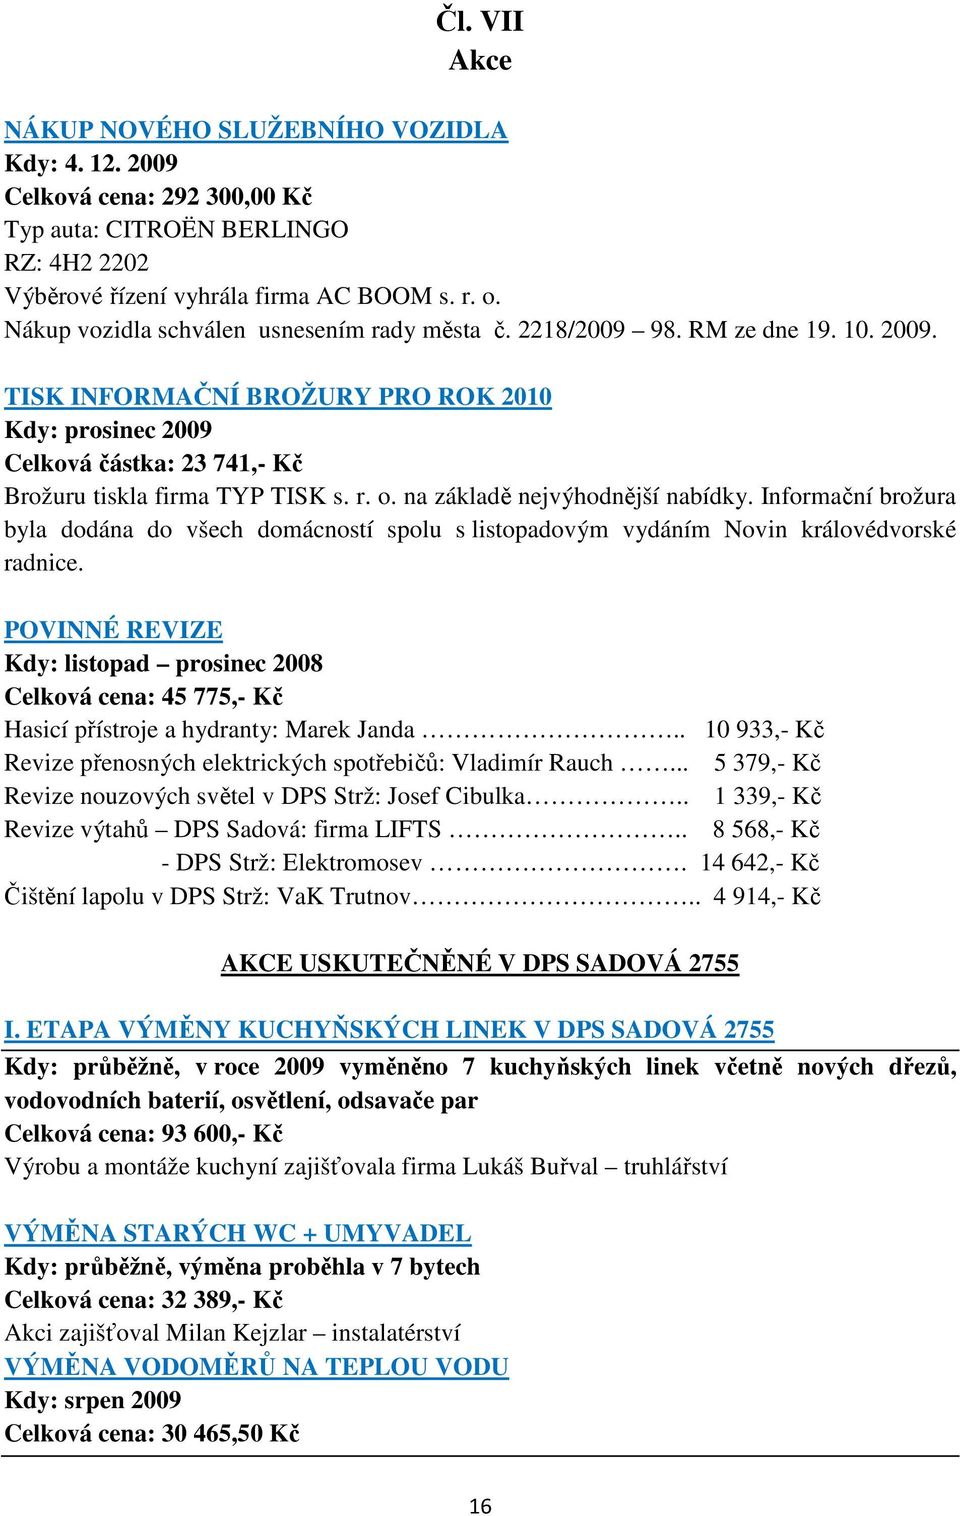 TISK INFORMAČNÍ BROŽURY PRO ROK 2010 Kdy: prosinec 2009 Celková částka: 23 741,- Kč Brožuru tiskla firma TYP TISK s. r. o. na základě nejvýhodnější nabídky.